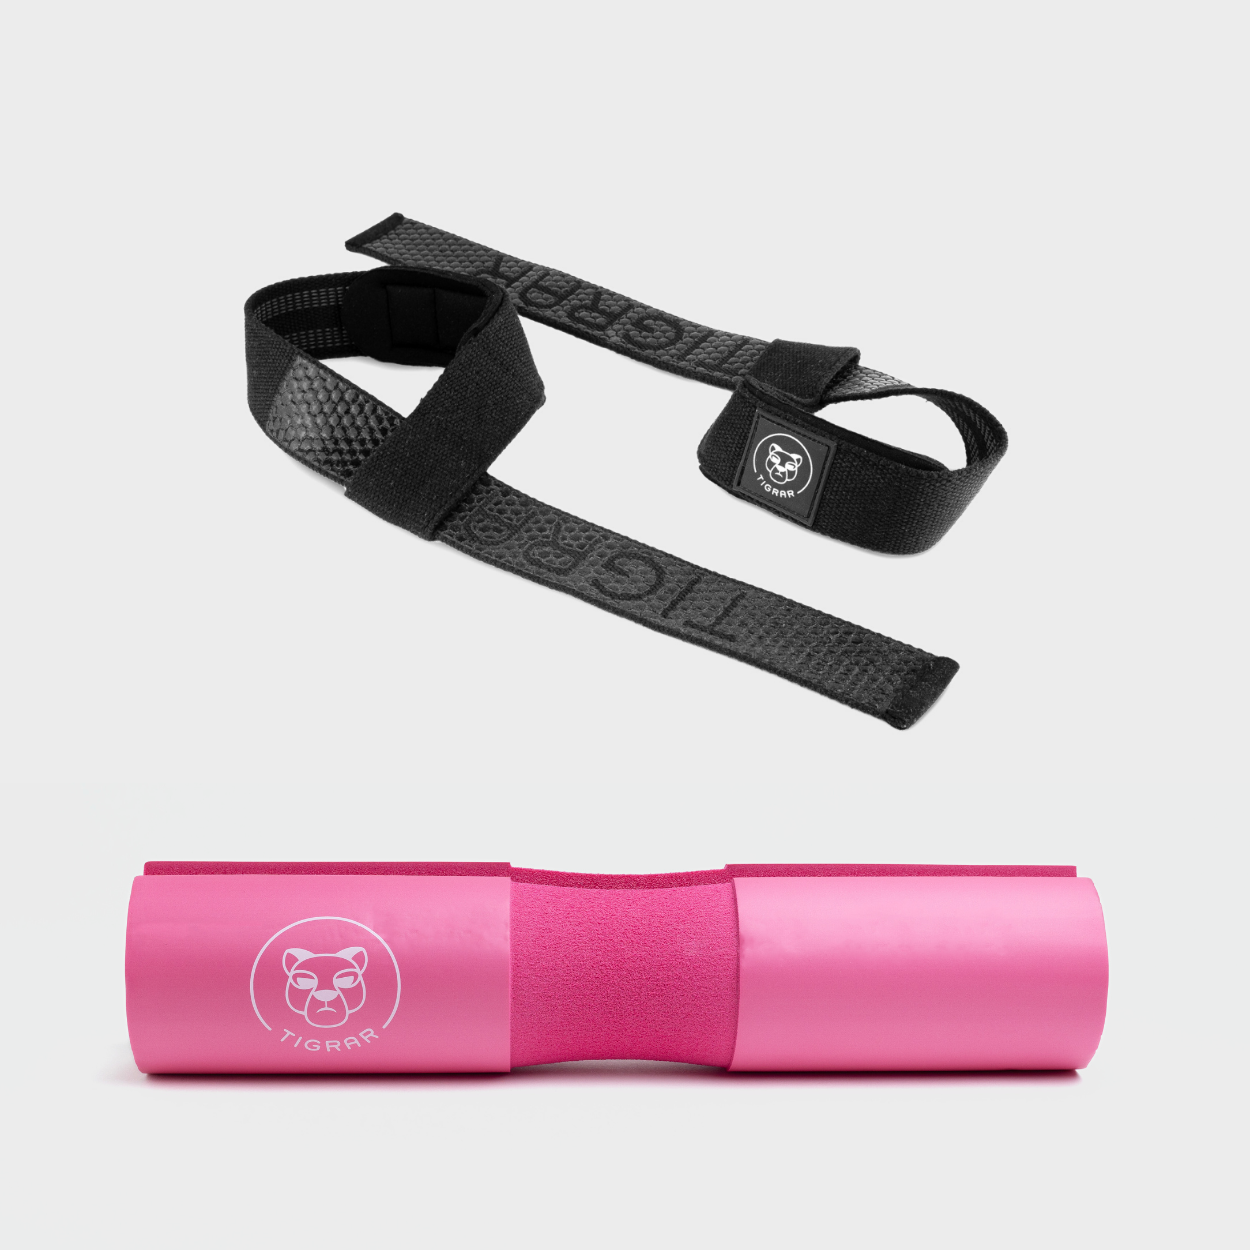 Contrasterende zwarte lifting straps met roze Tigrar barbell pad, combineert slijtvastheid met beschermend comfort.